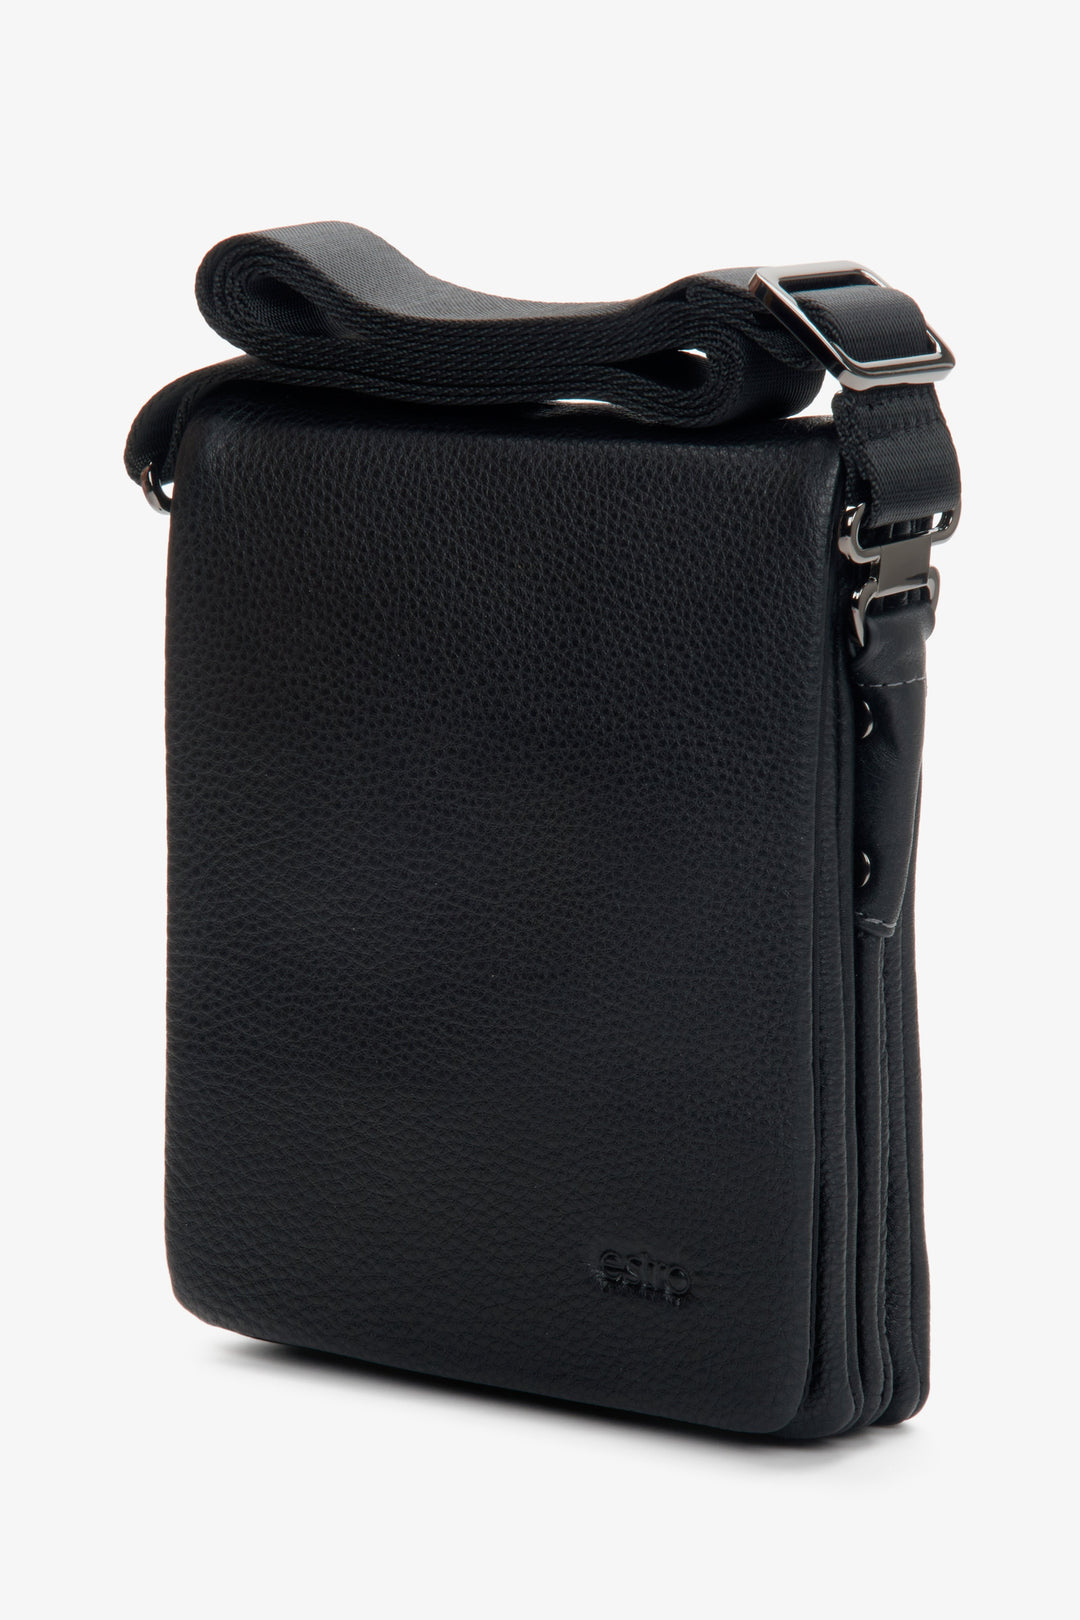 Men's black leather shoulder bag by Estro.